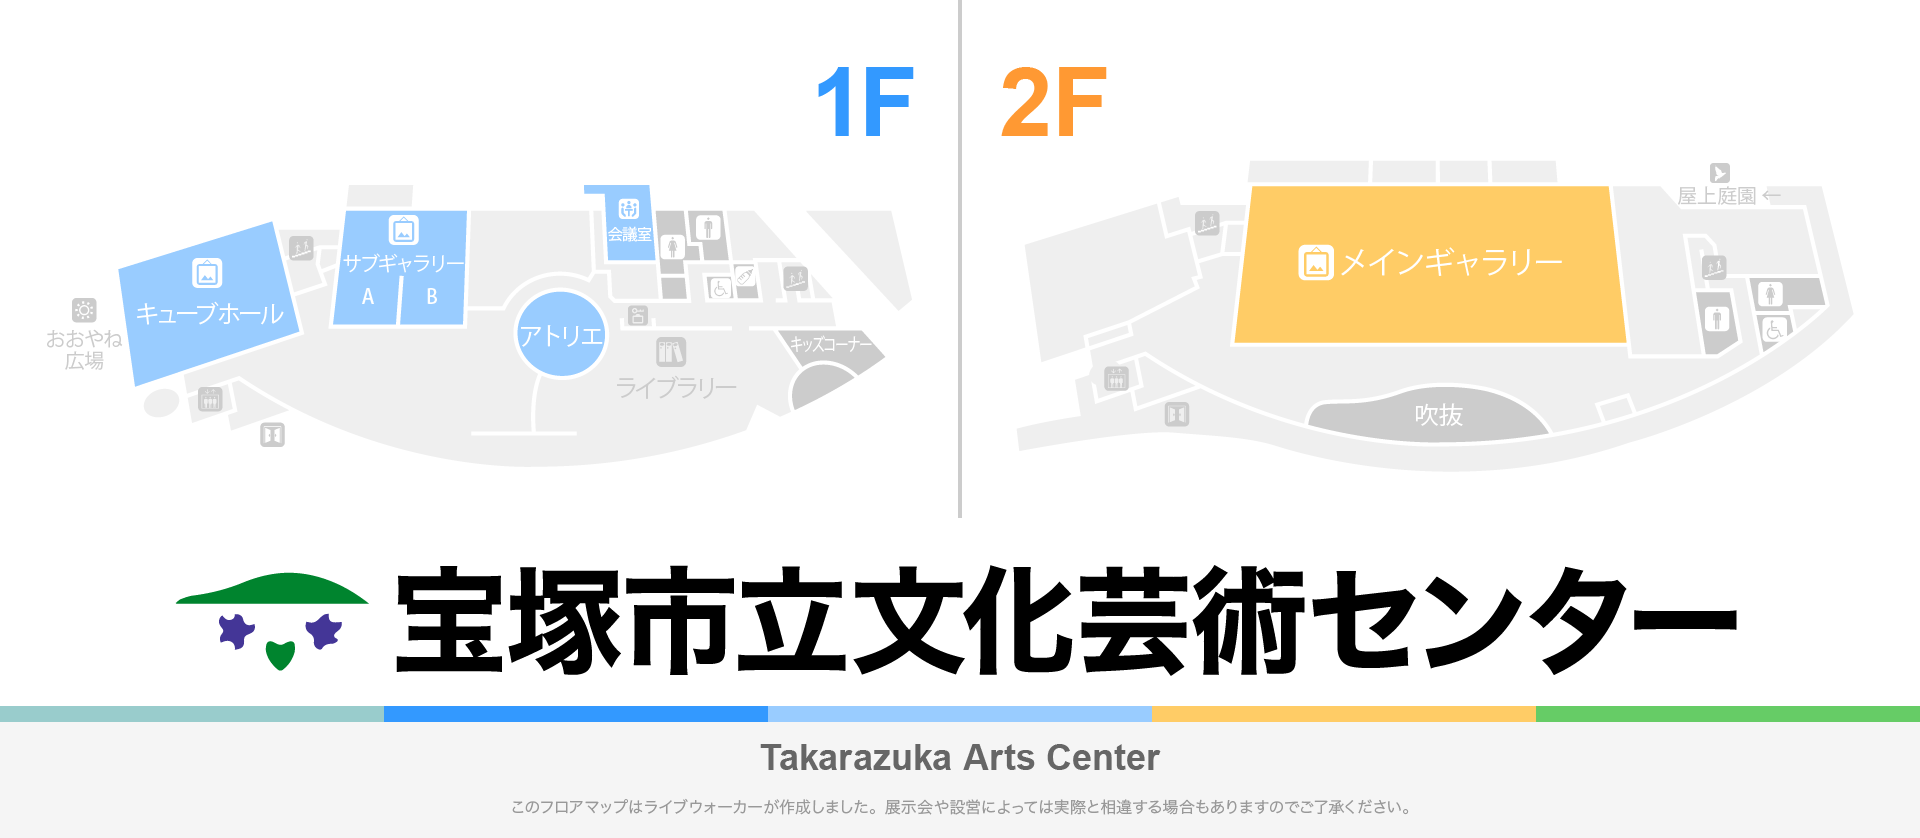 宝塚市立文化芸術センターのフロアマップ